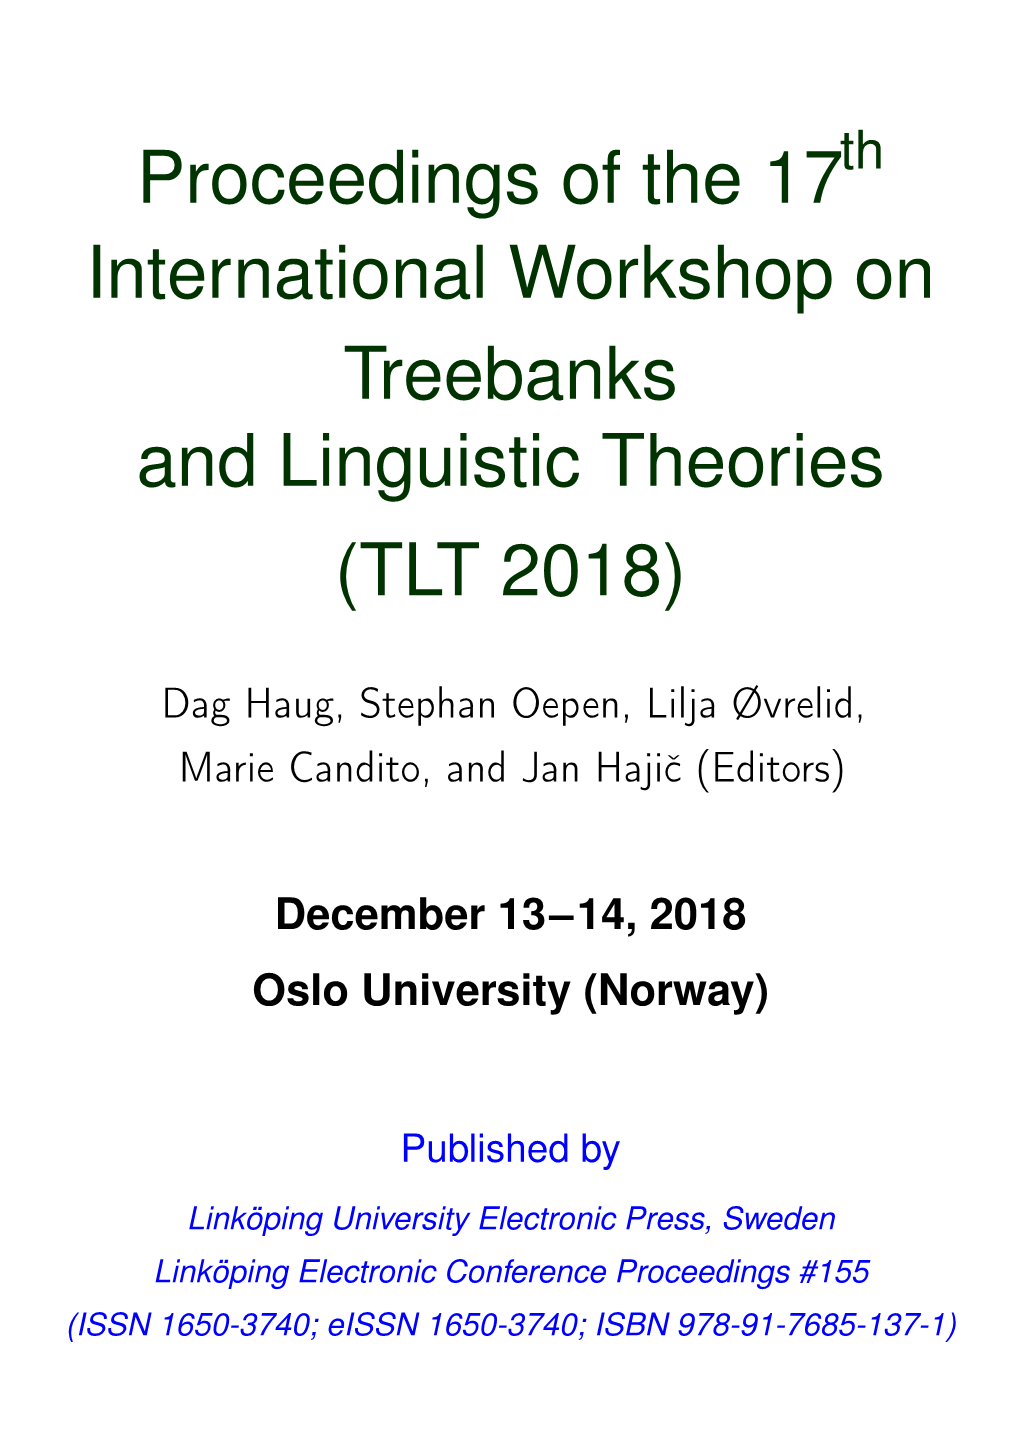 International Workshop on Treebanks and Linguistic Theories (TLT 2018)